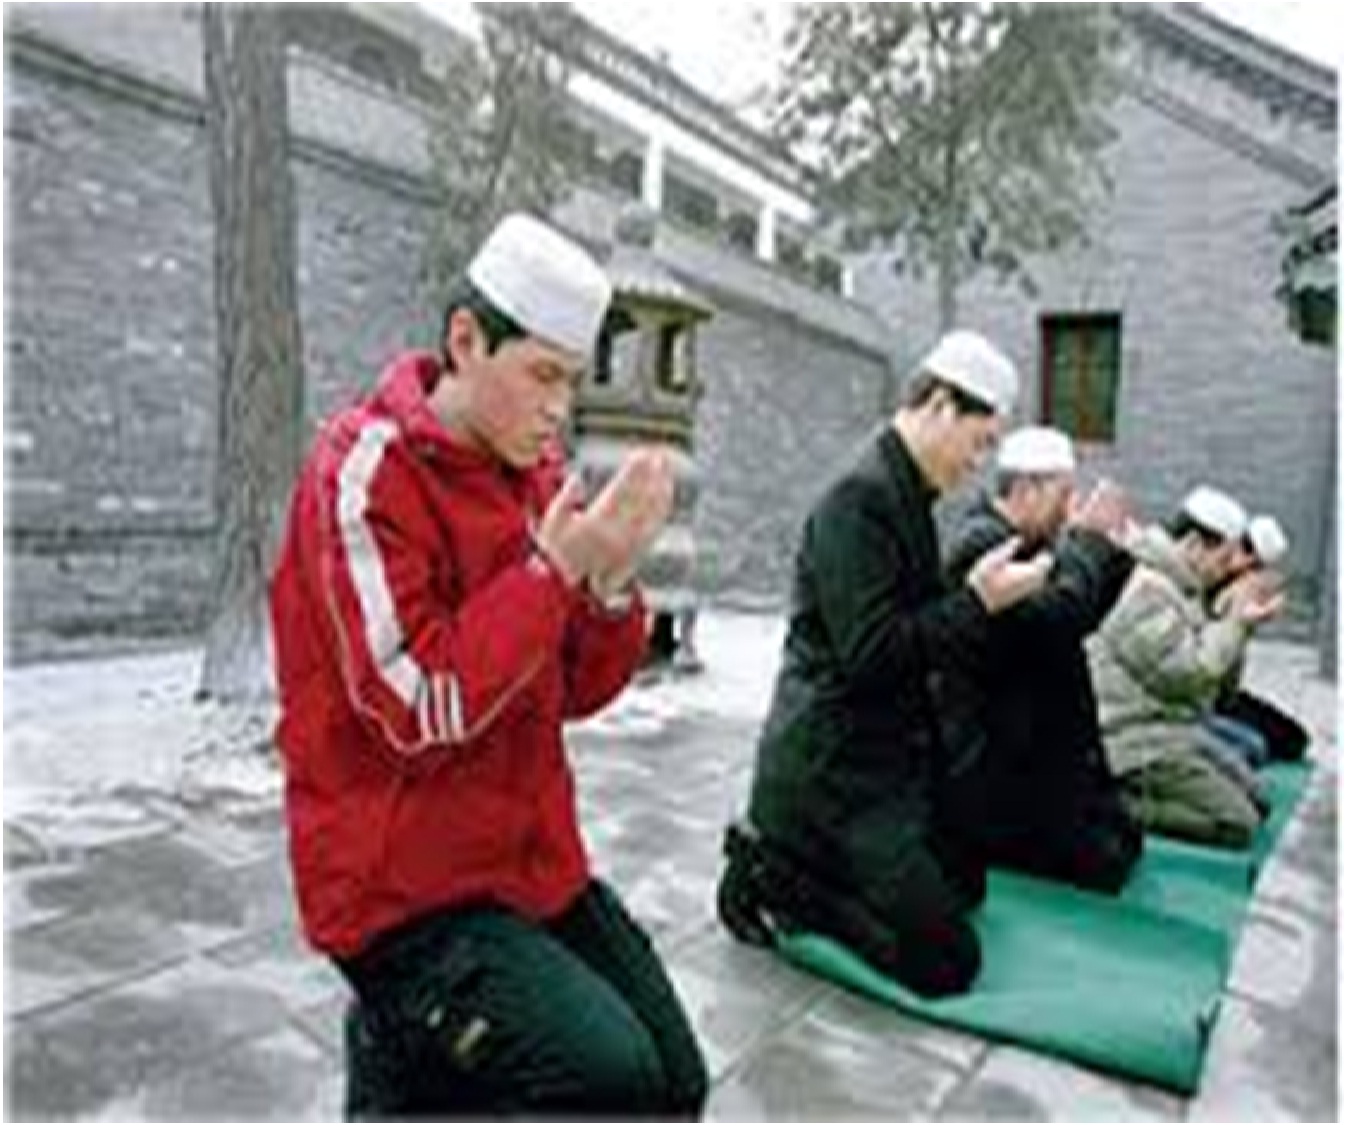 6240 9 الاسلام في الصين - تعالوا نعرف ازي دخل هناك ام عبدالعزيز